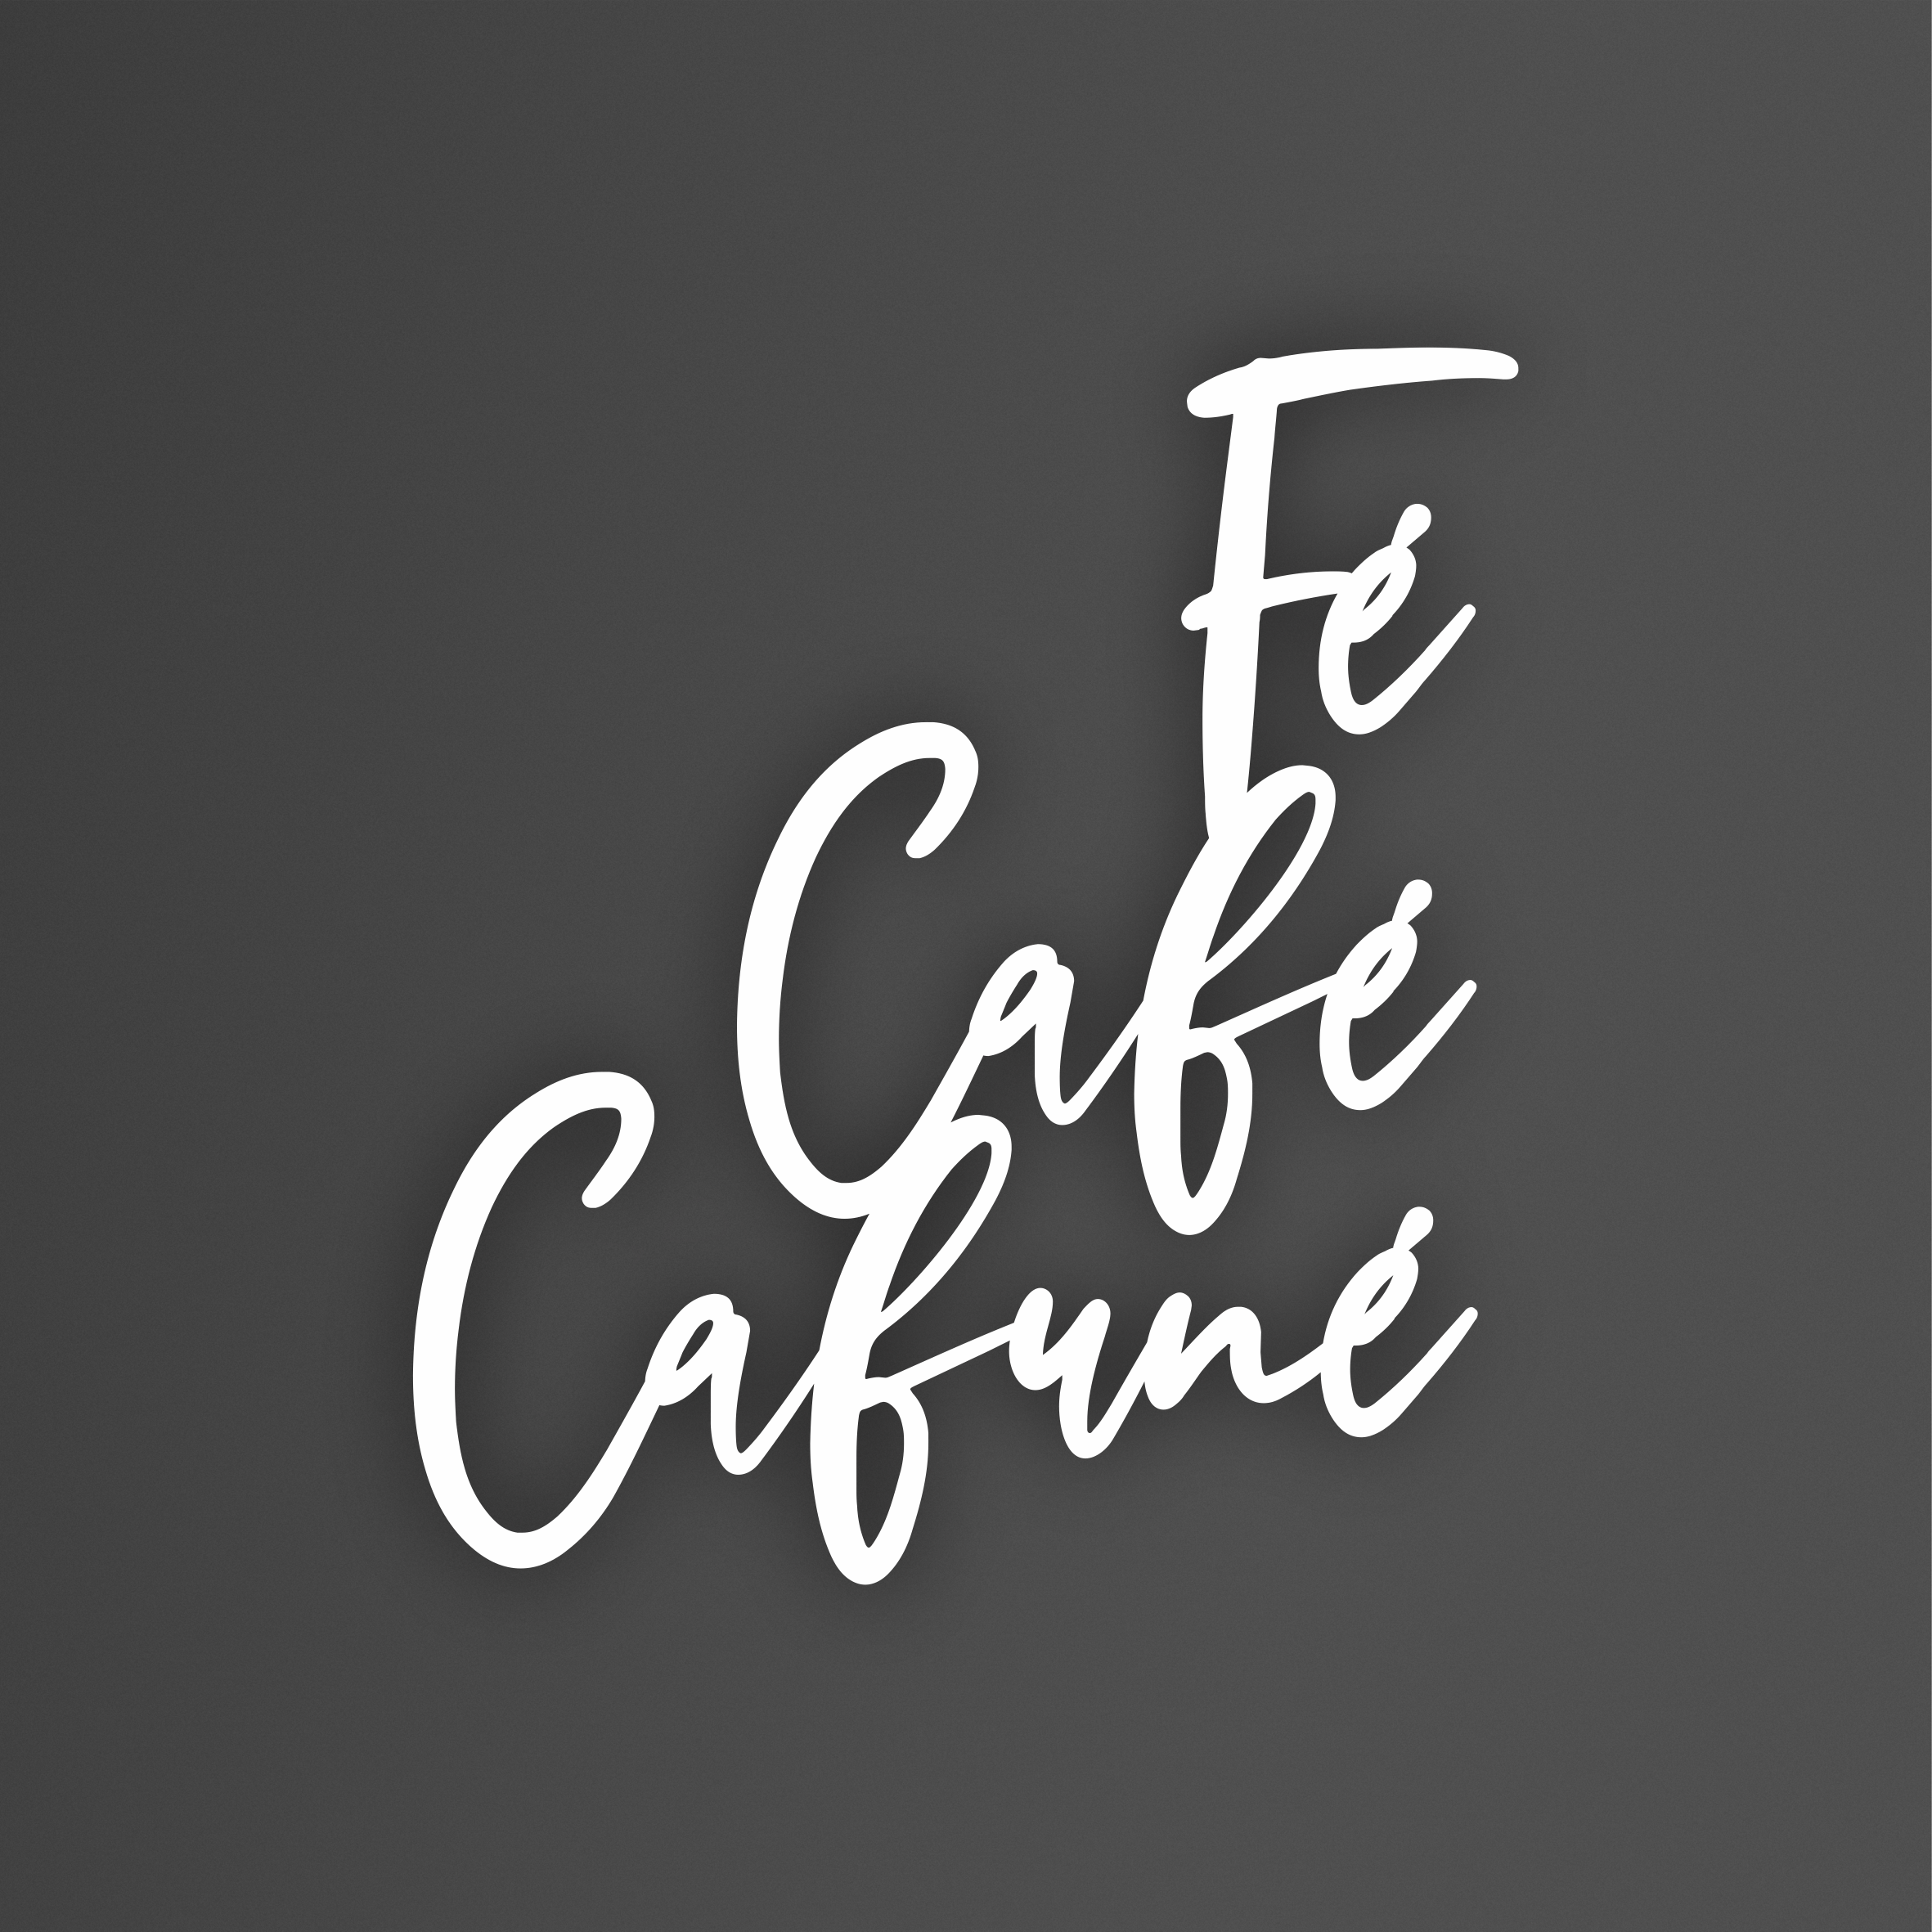 Letreiro Decorativo Para Cantinho Do Café Fé Café Cafuné